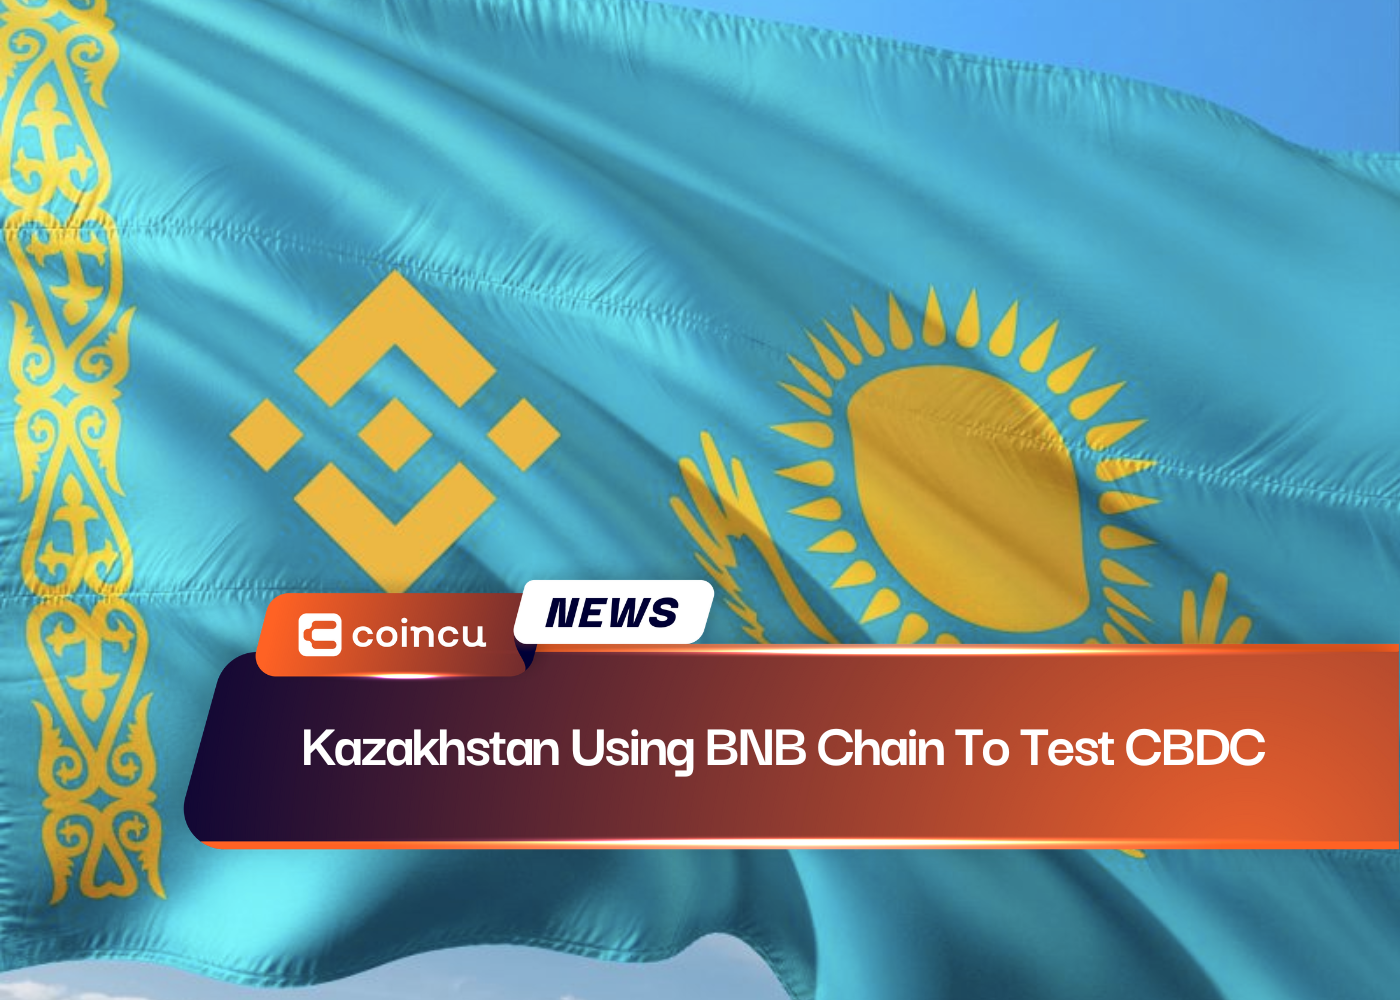 Kazakhstan Using BNB Chain To Test CBDC